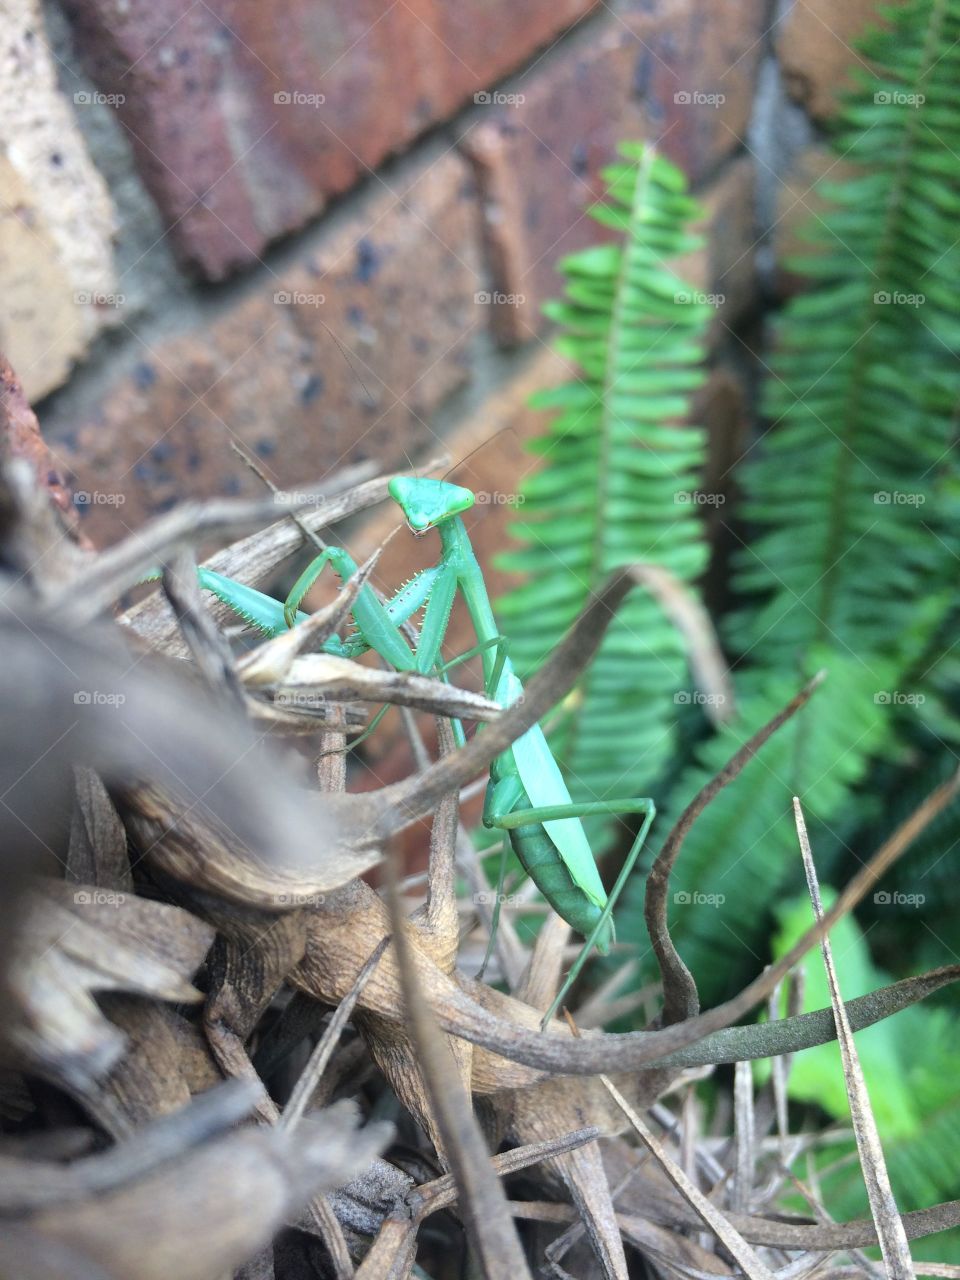 Mantis watching me as I take pictures. 